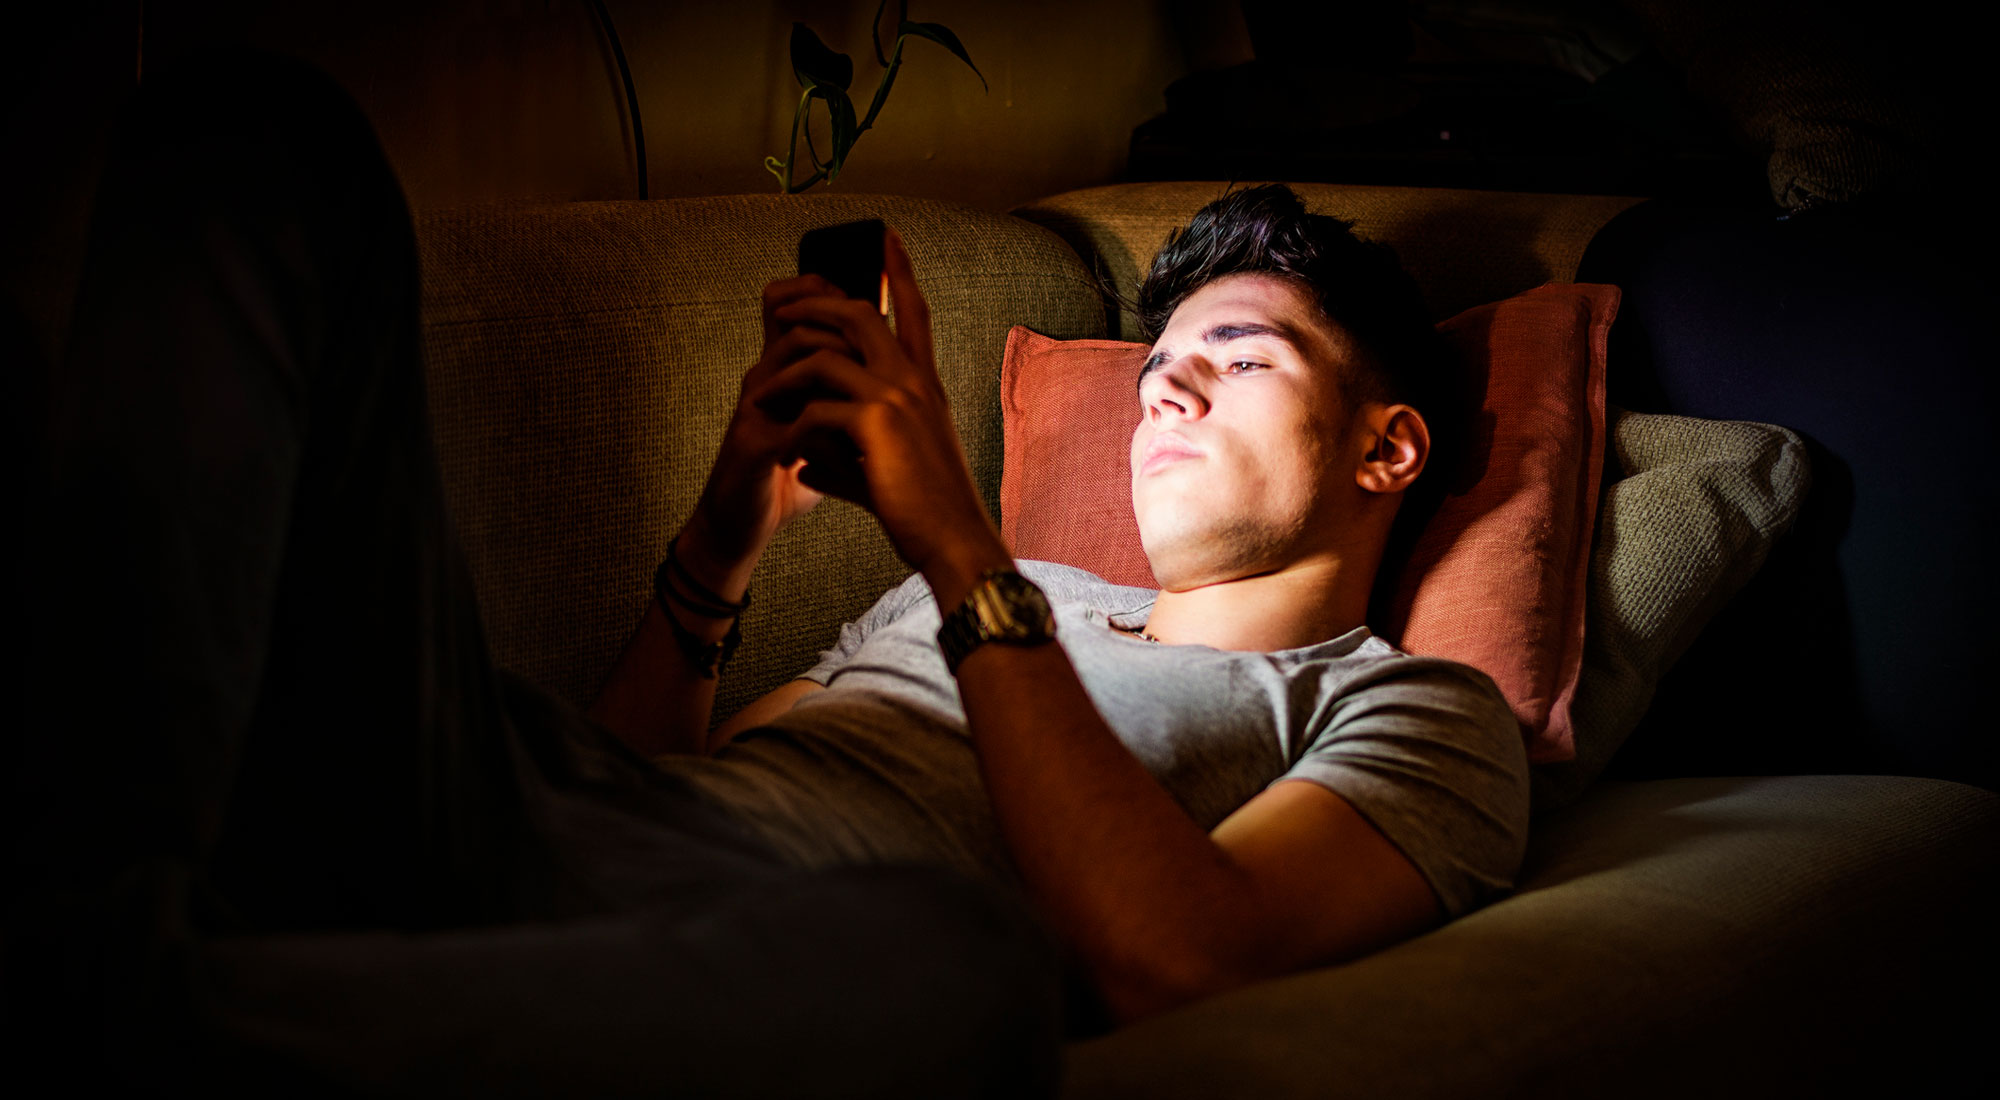 teenage male on phone at night